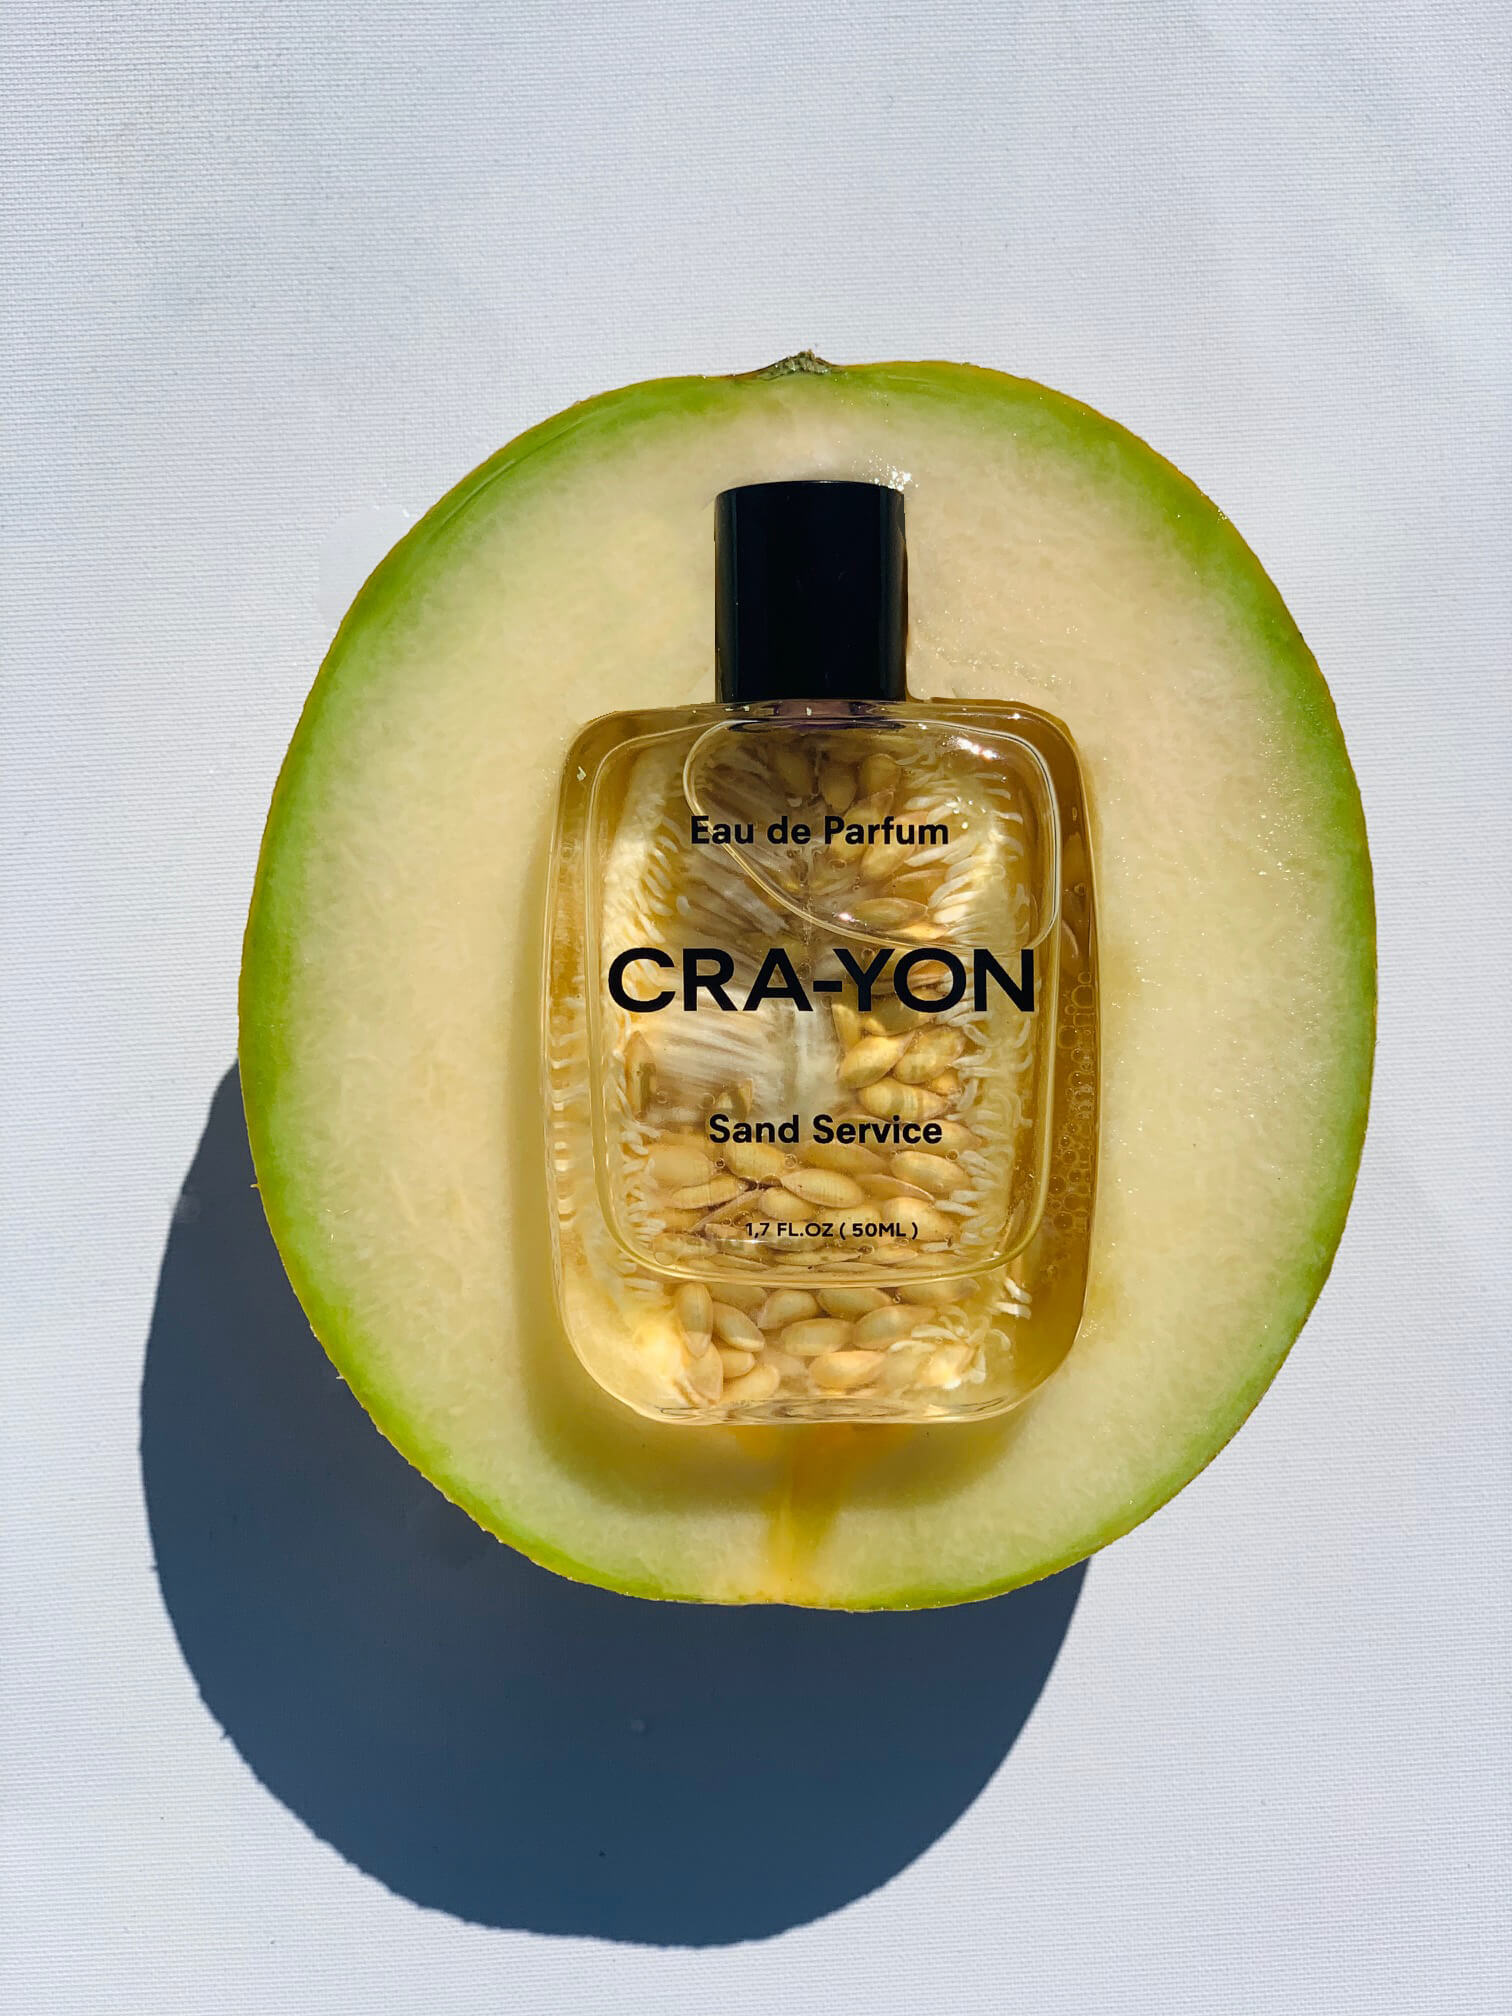 'Sand Service' Eau De Parfum | Unisex | 50ml Spray | by CRA-YON - Lifestory - CRA-YON